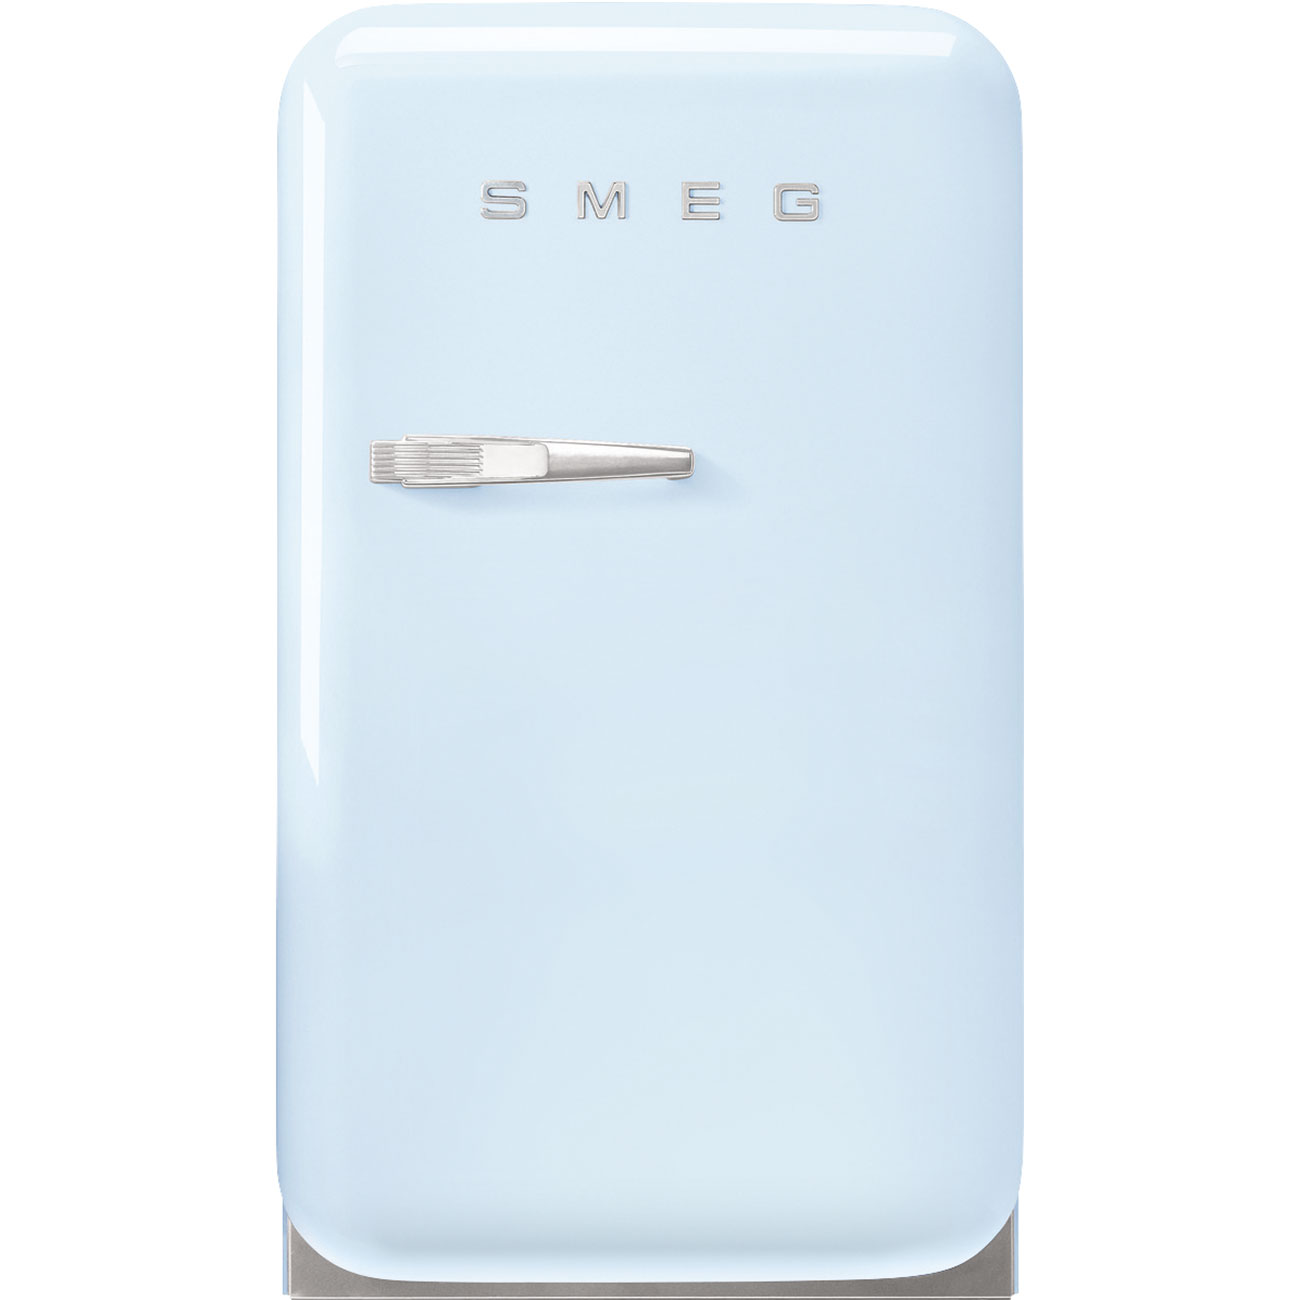 En låge Fritstående refrigerator - Smeg_1